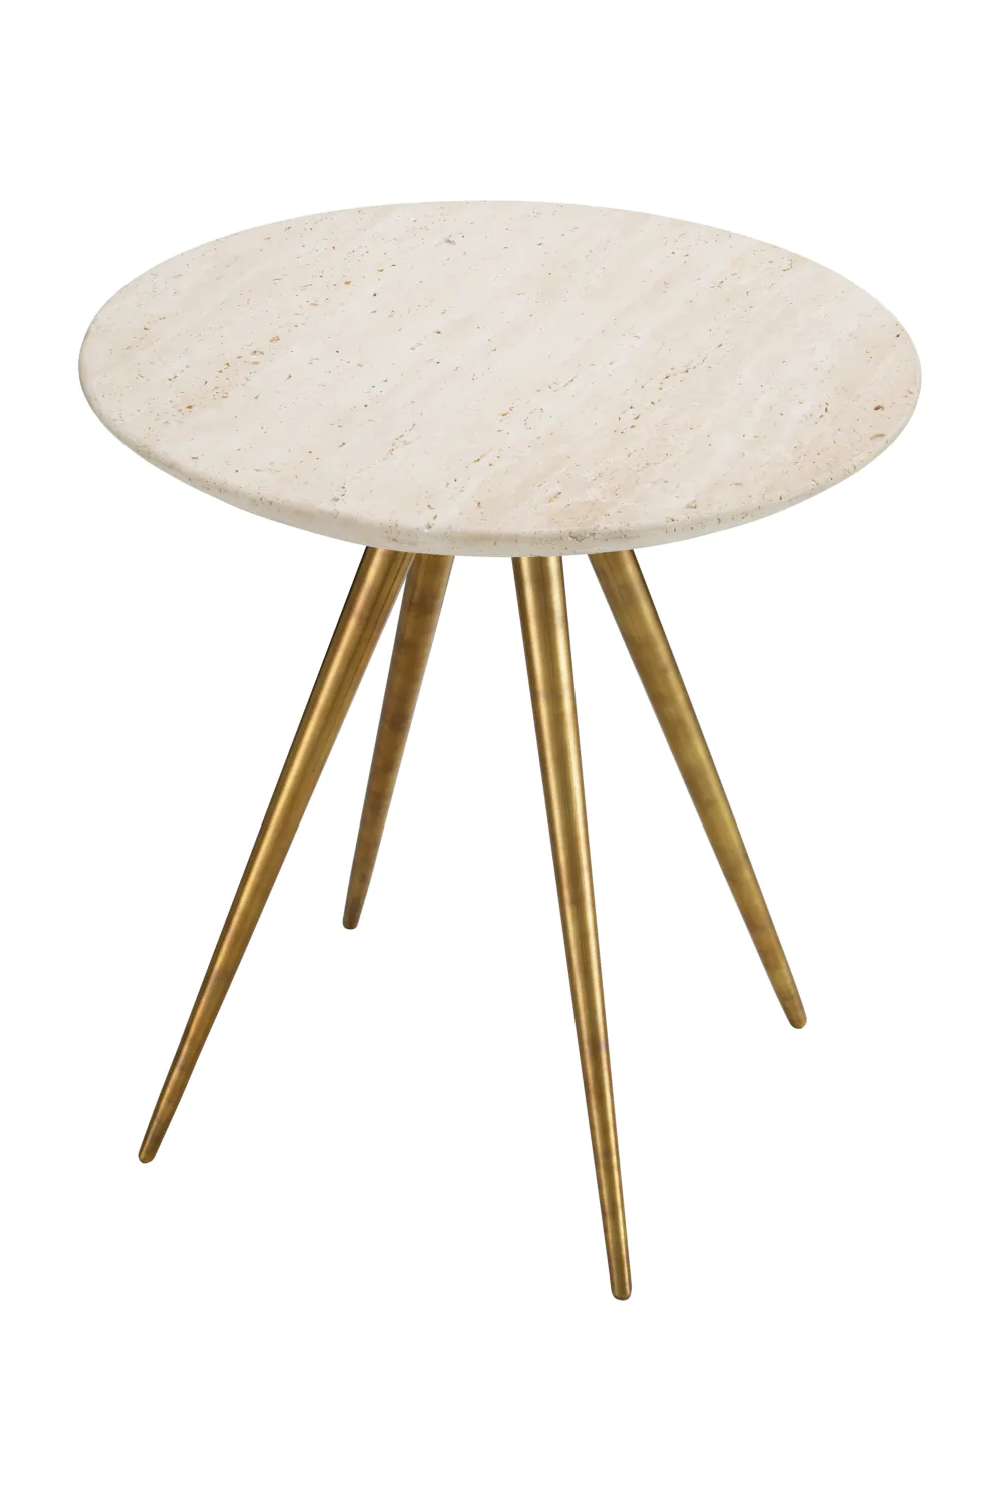 Round Travertine Side Table | Eichholtz Ranco | Oroa.com